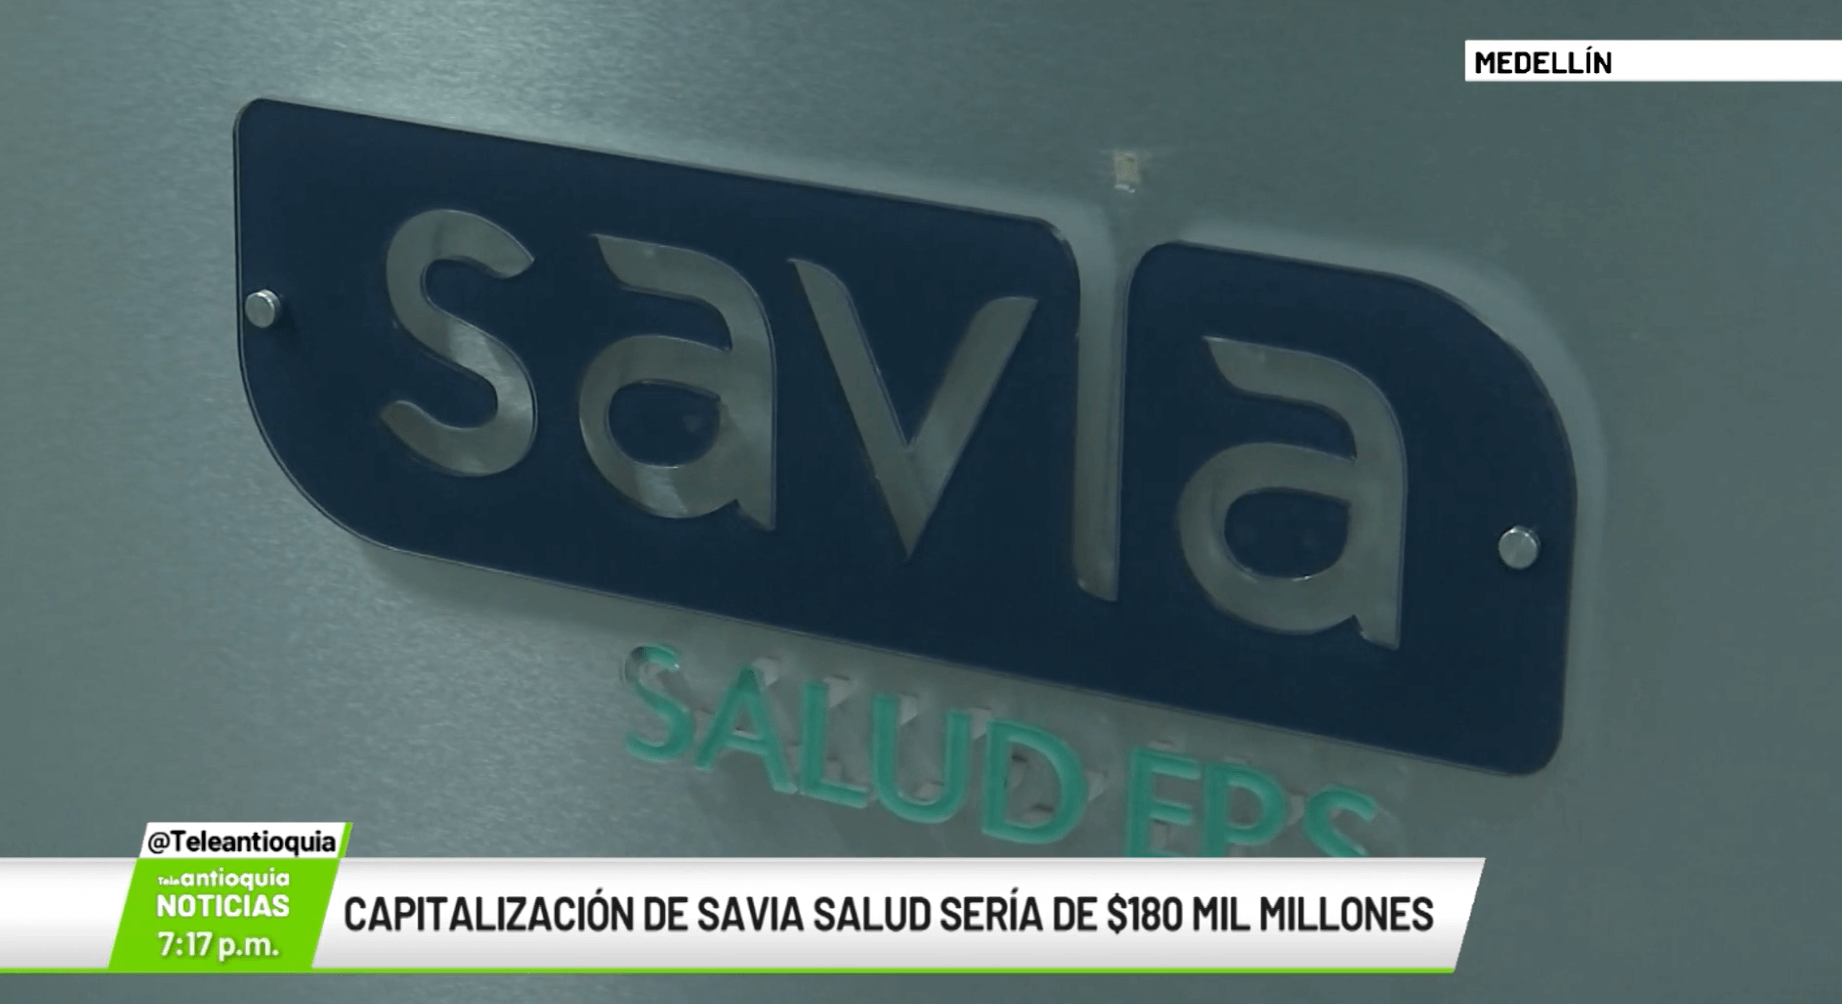 Capitalización de Savia Salud sería de $180 mil millones